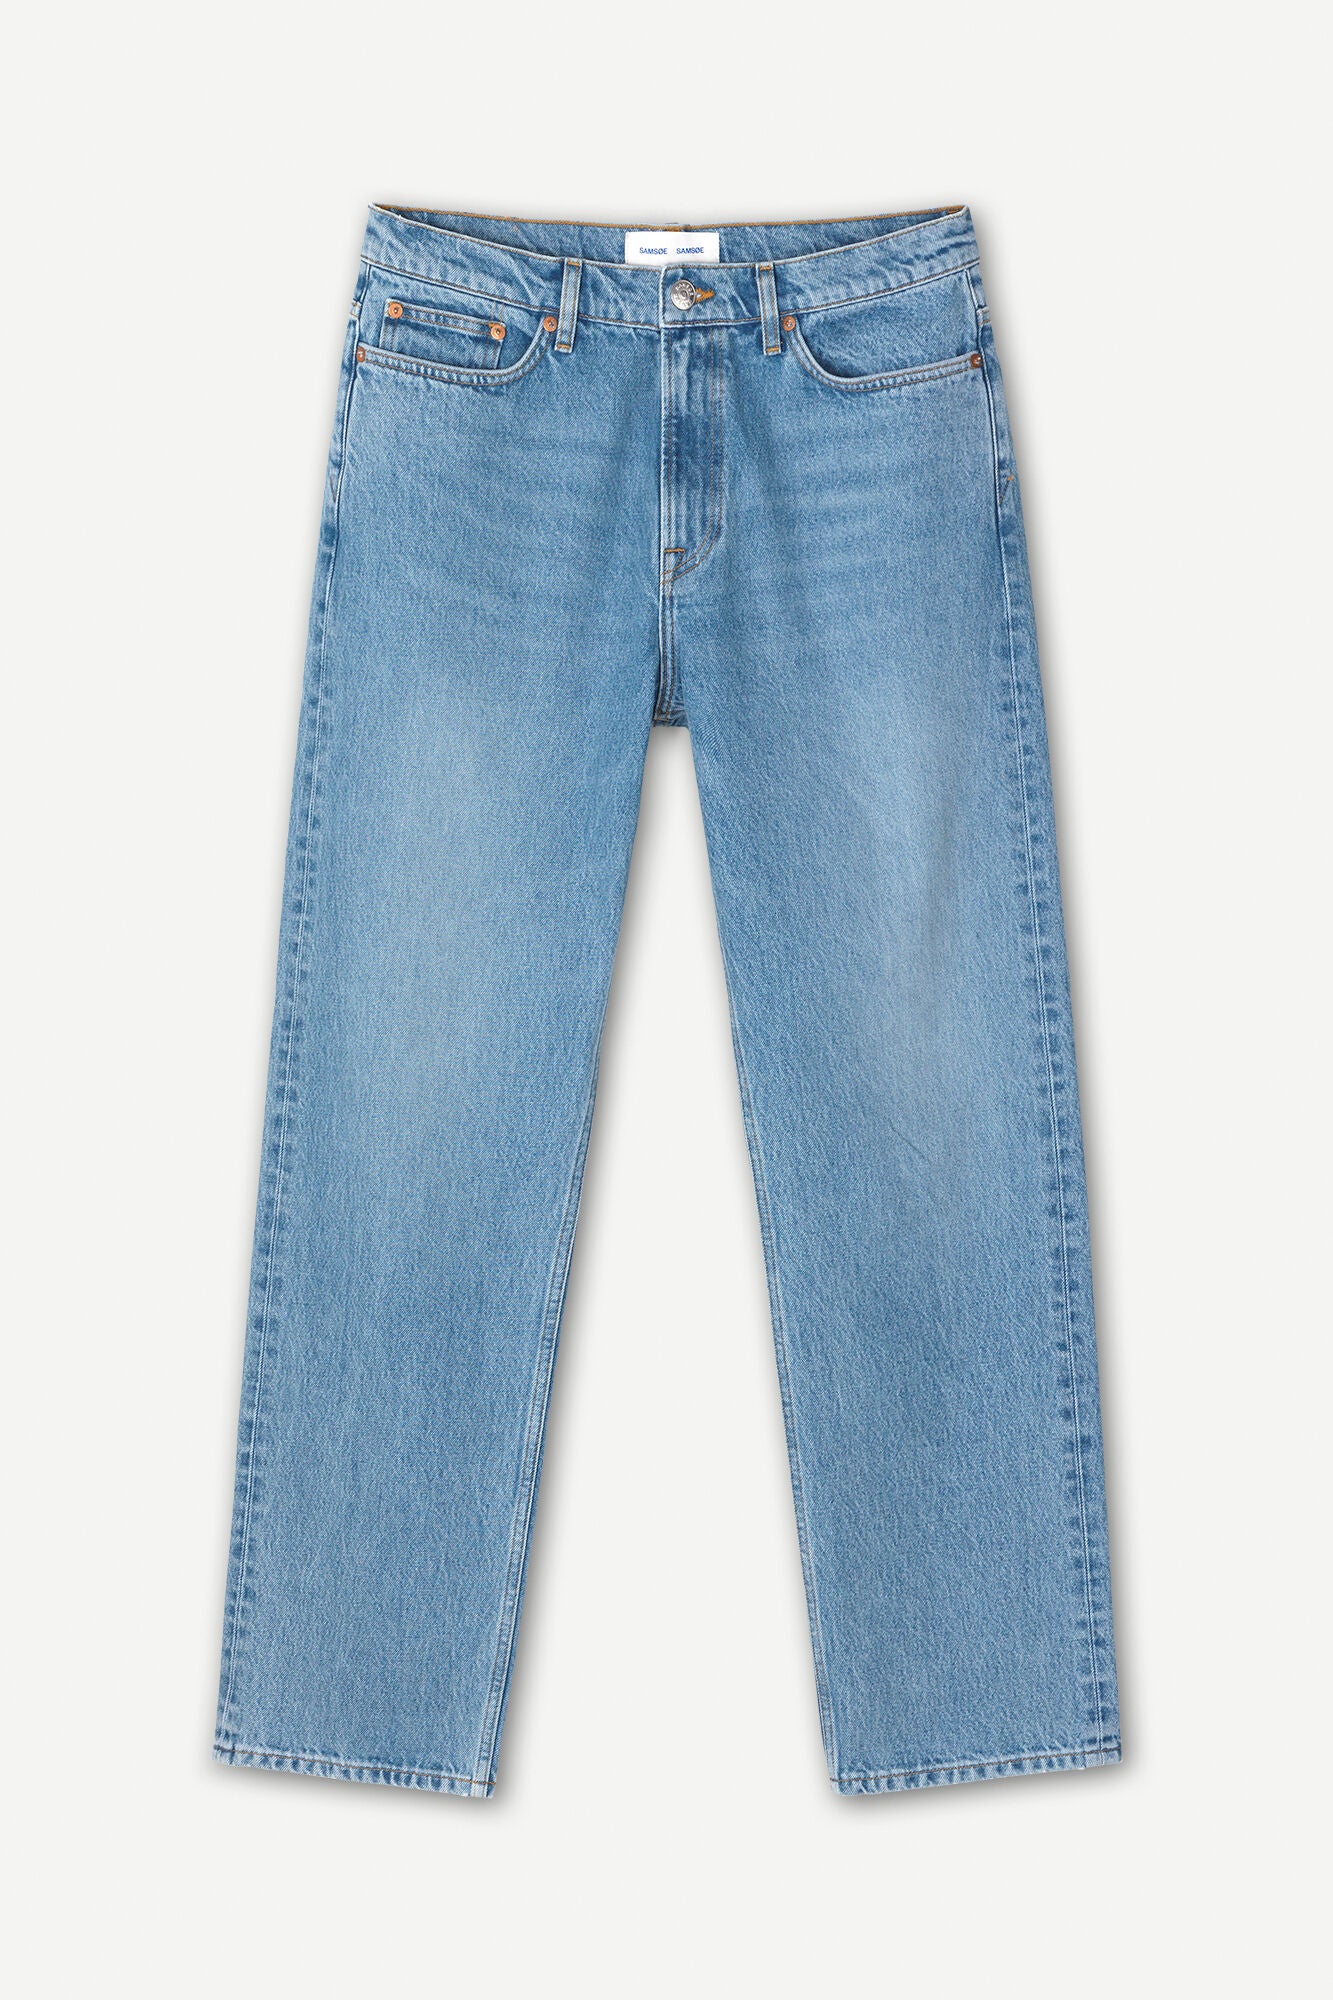 Eddie jeans 14144